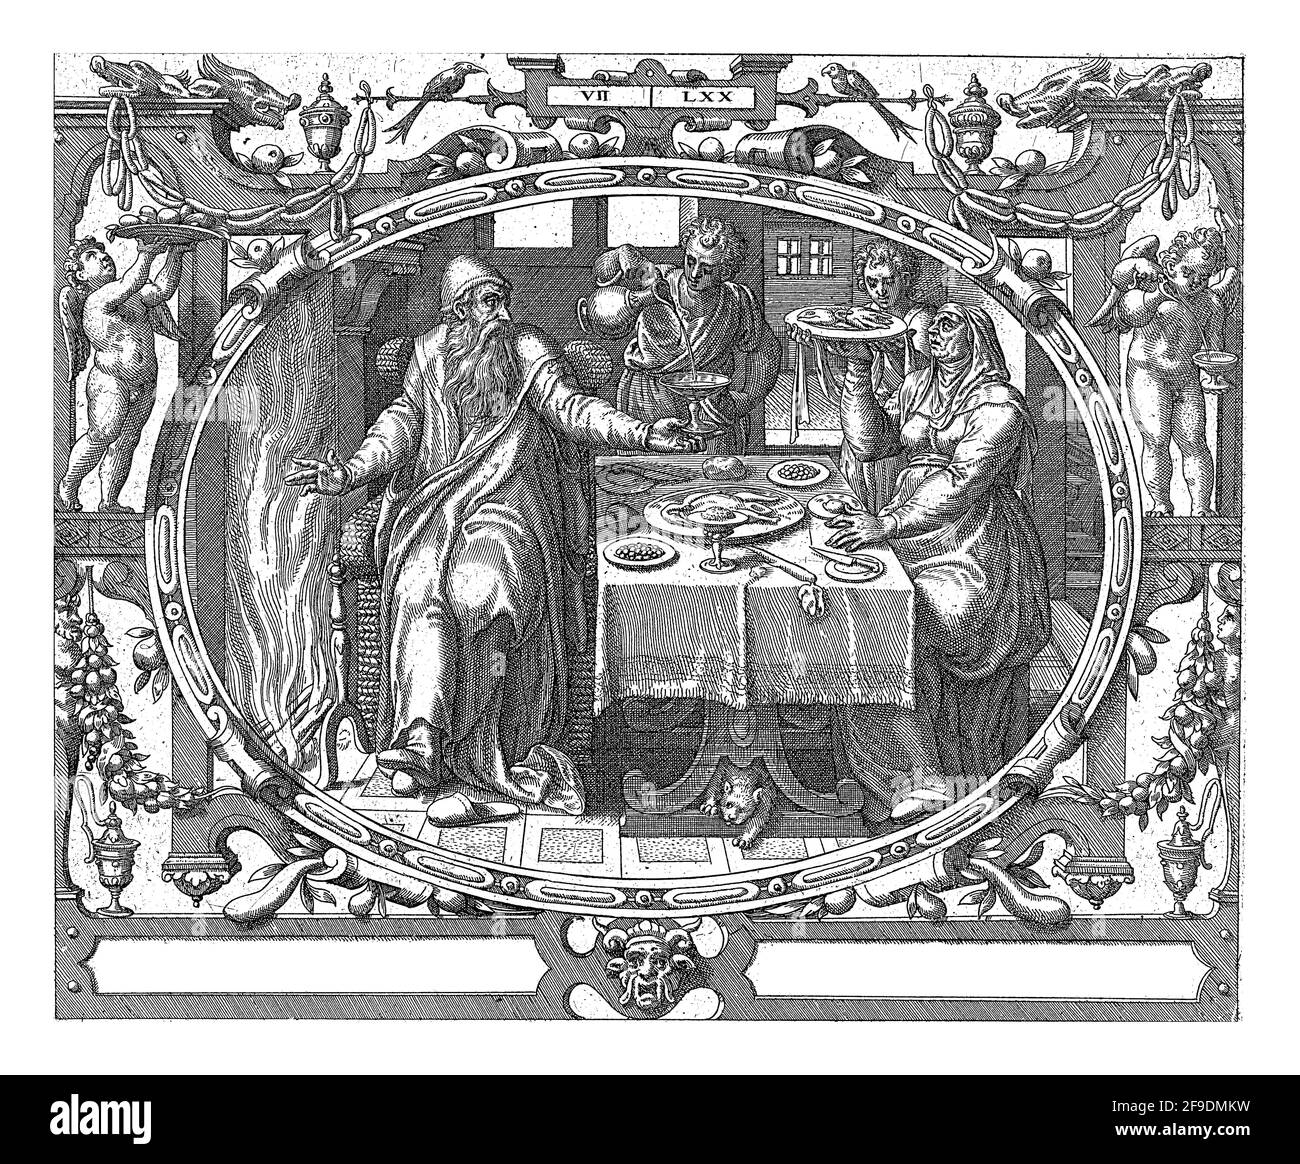 En un marco oval decorado con ornamentos, una representación de un anciano y su esposa en la mesa junto a la chimenea. Los sirvientes les sirven comida y bebida. Foto de stock